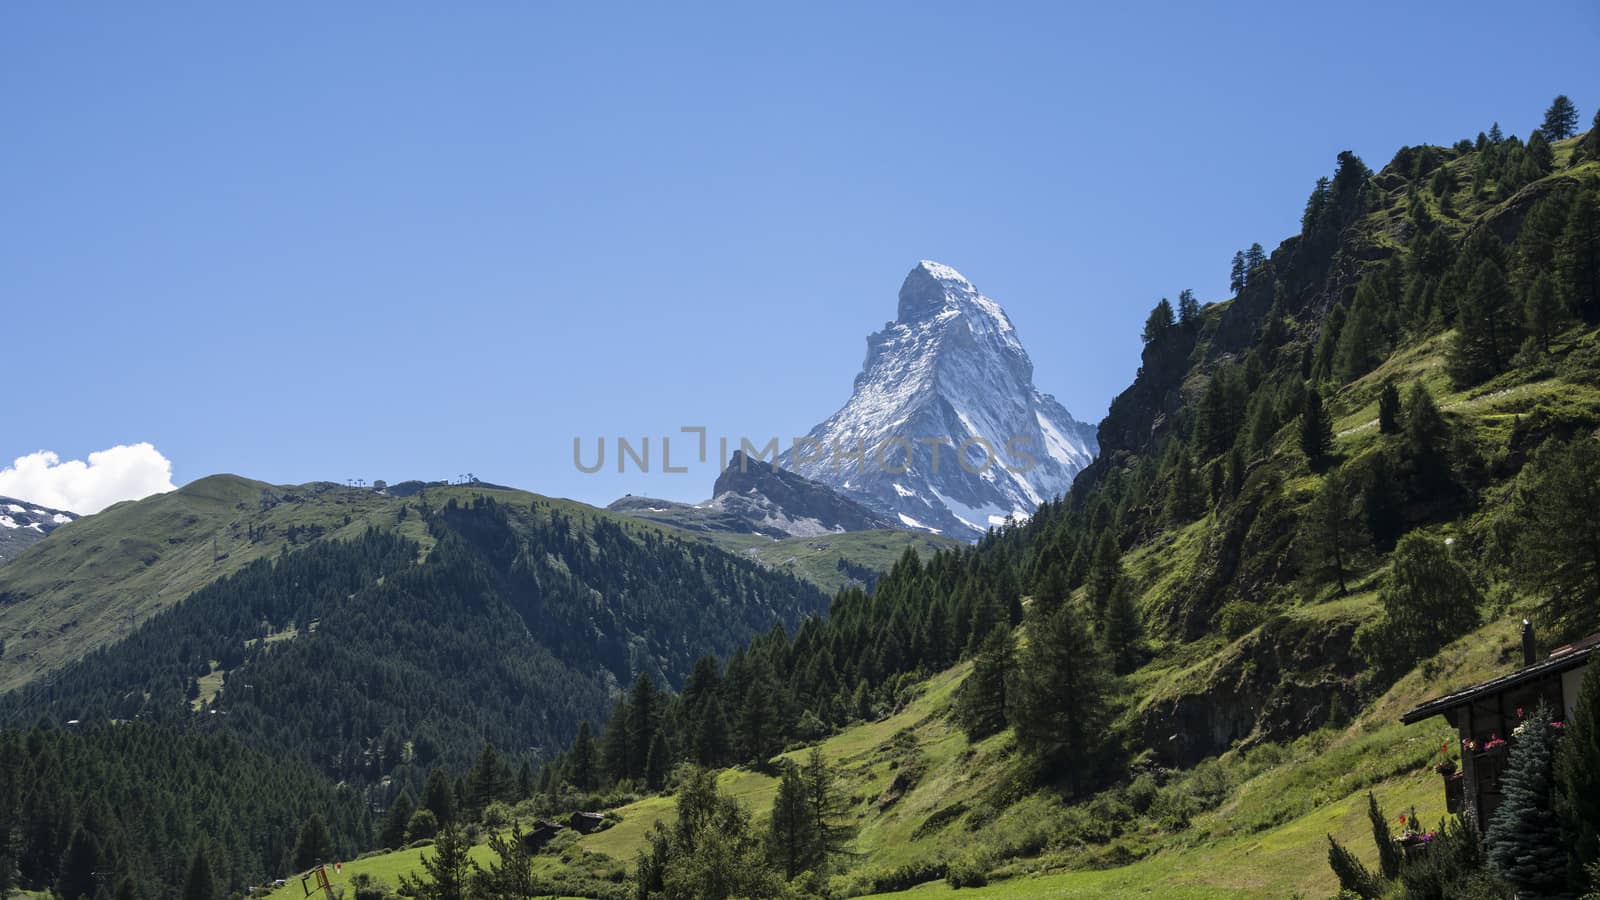 Matterhorn in Switzerland by rkris